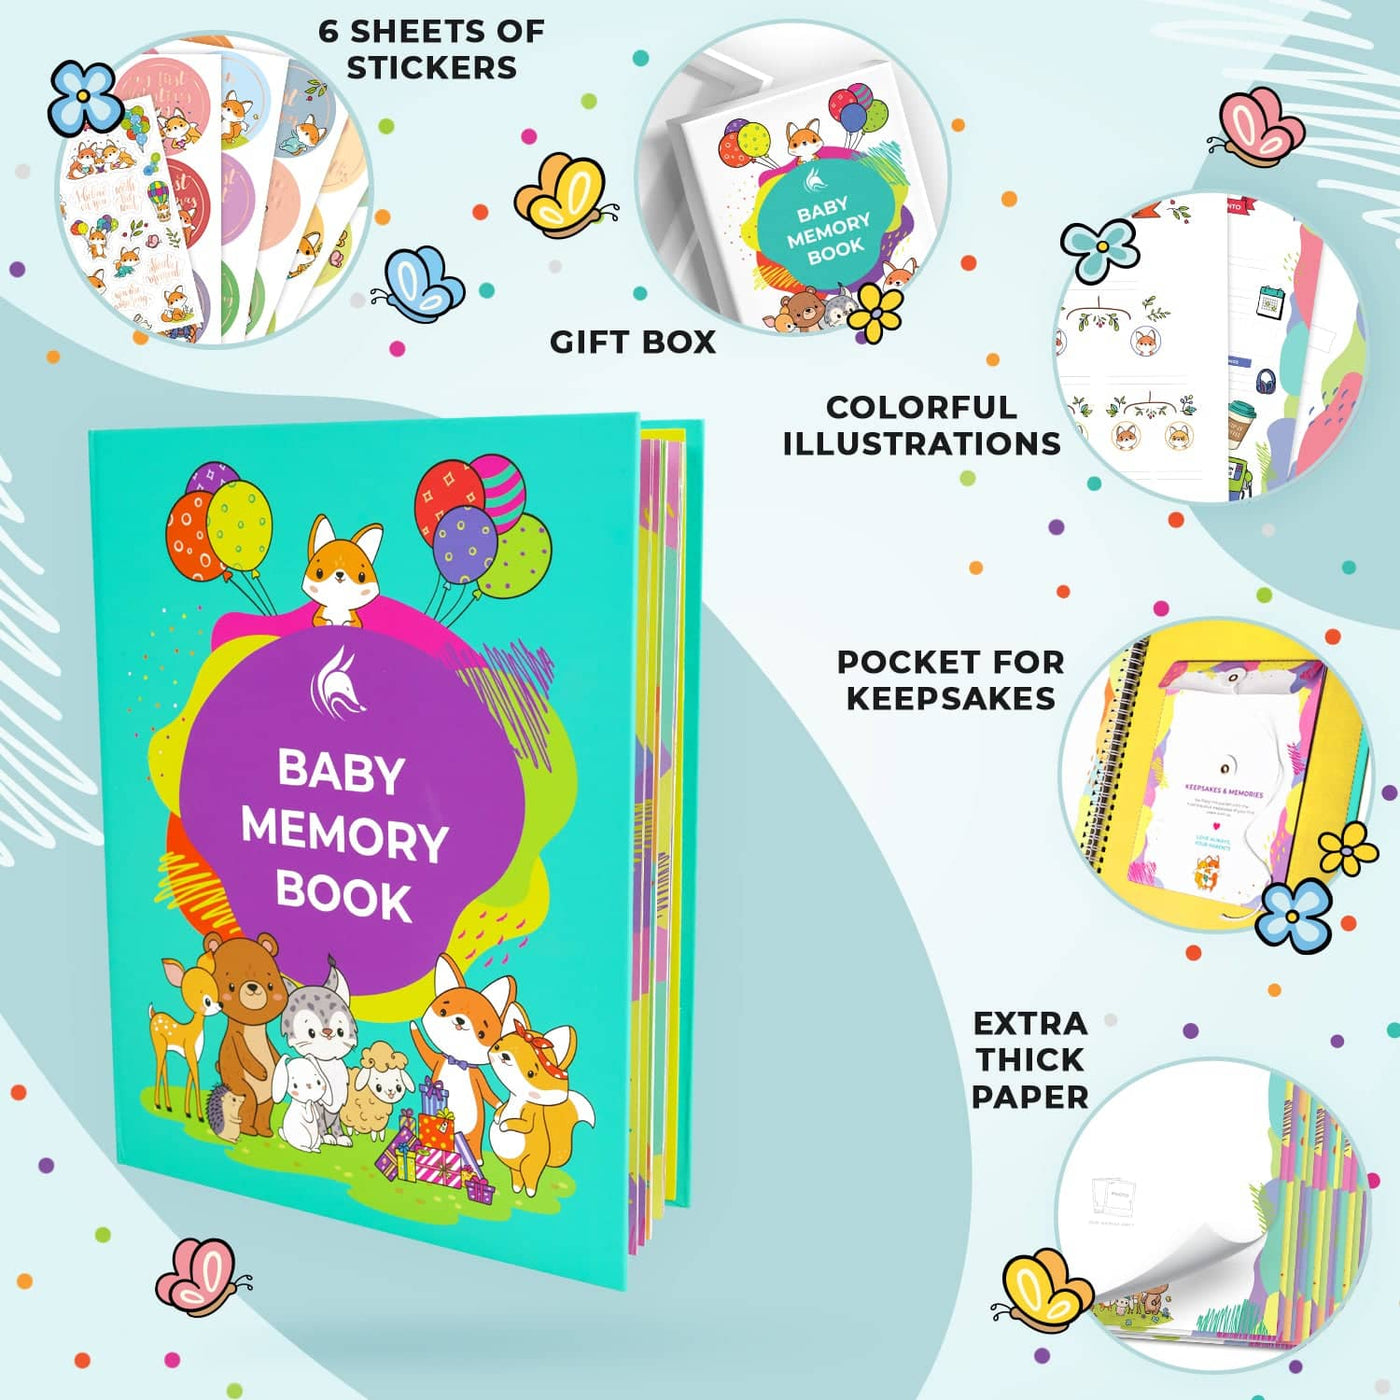 Baby Memory Book